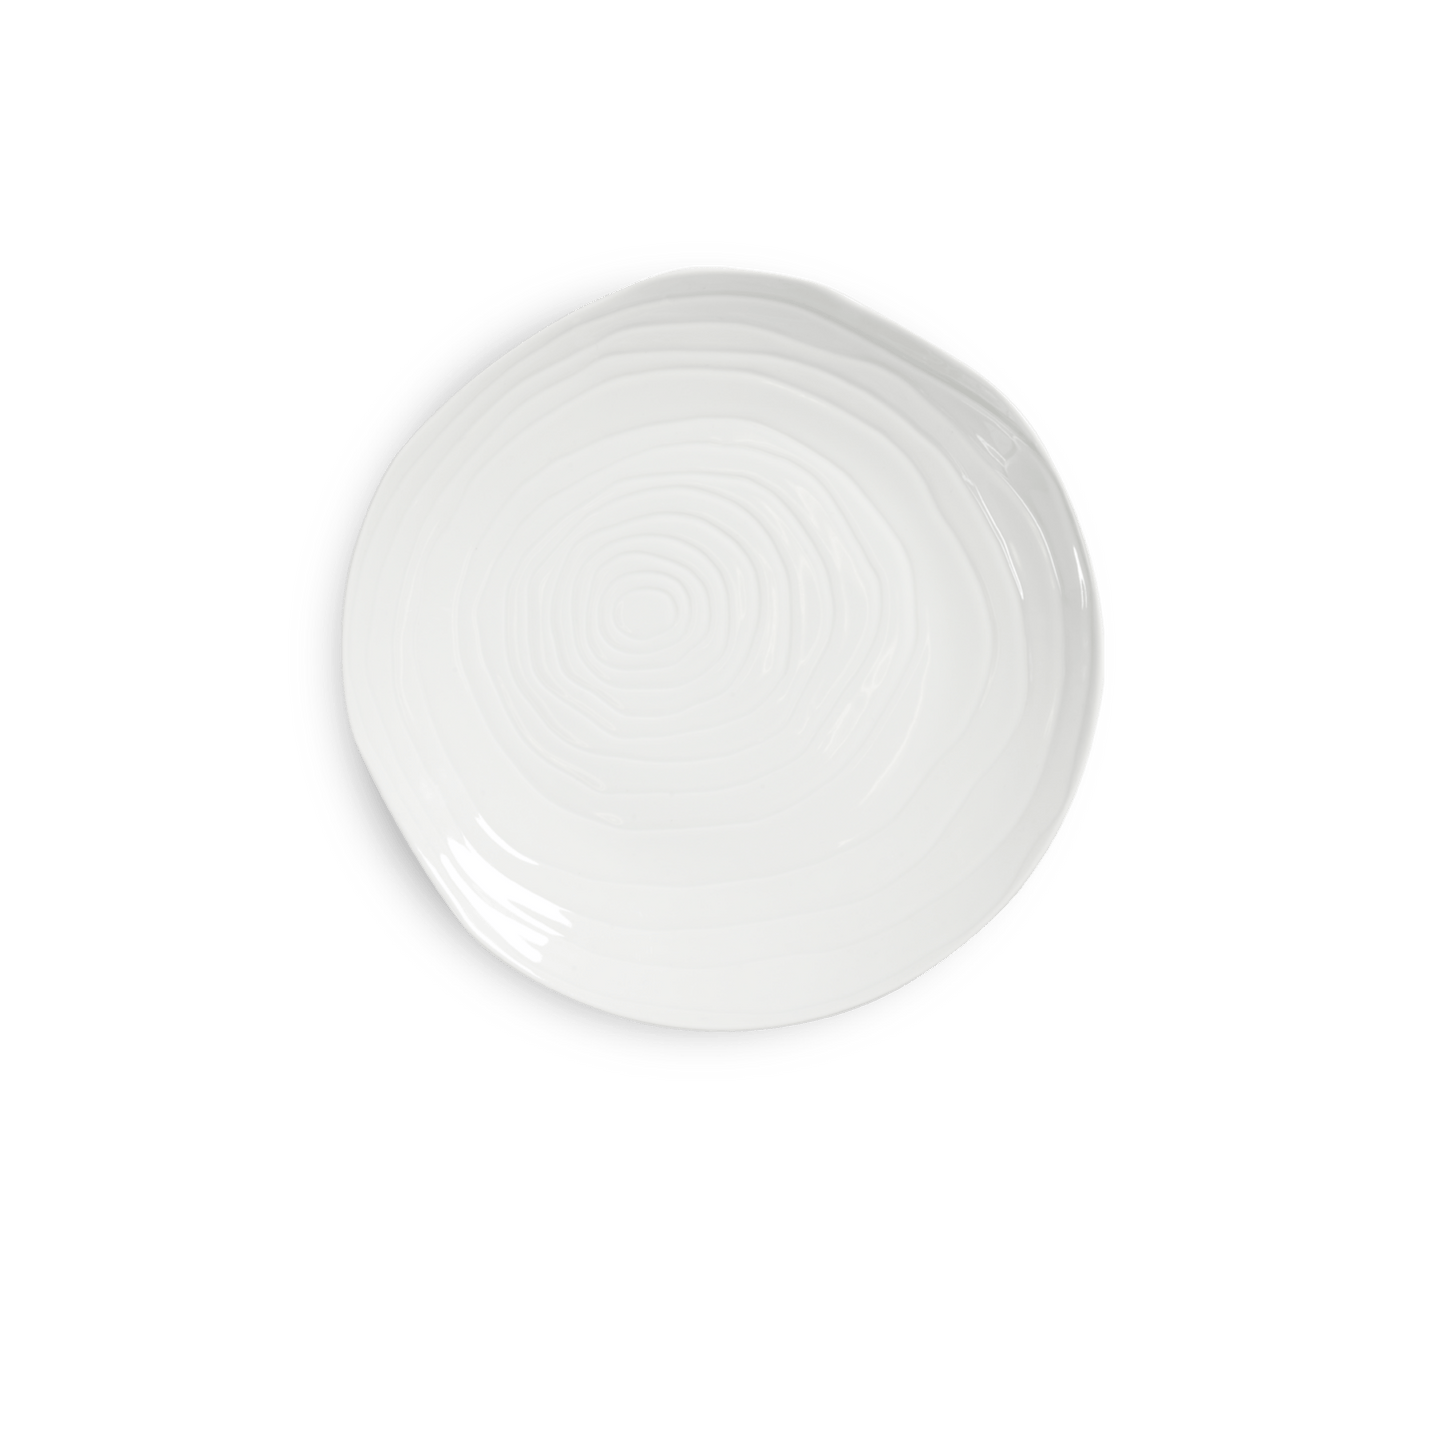 Platos llanos blancos Teck de 11, juego de 4